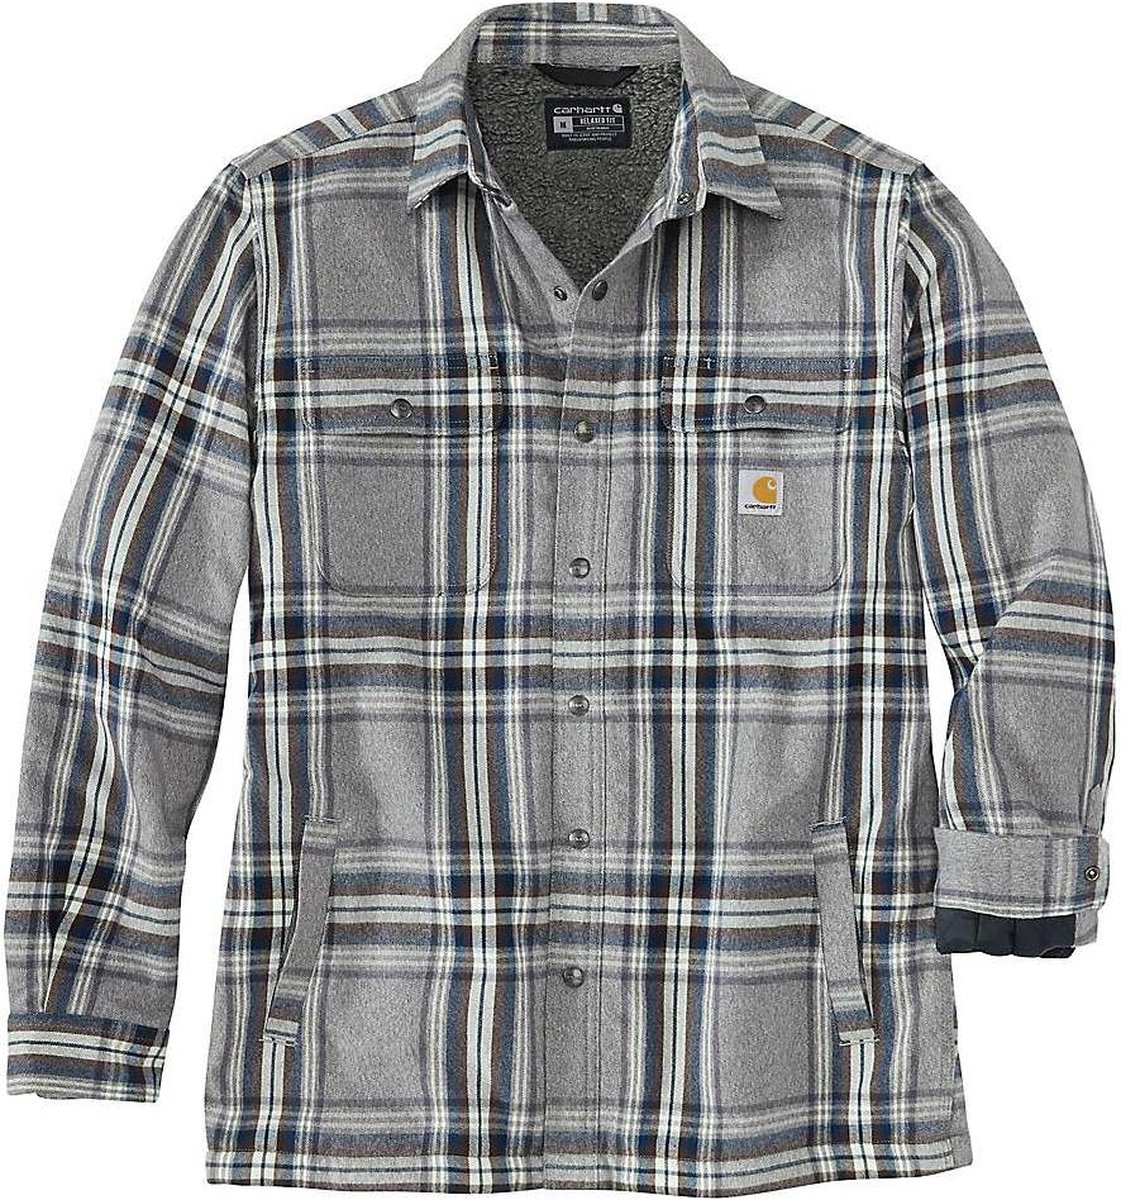 Carhartt heavyweight flannel sherpa lined shirt 105430 asphalt XL